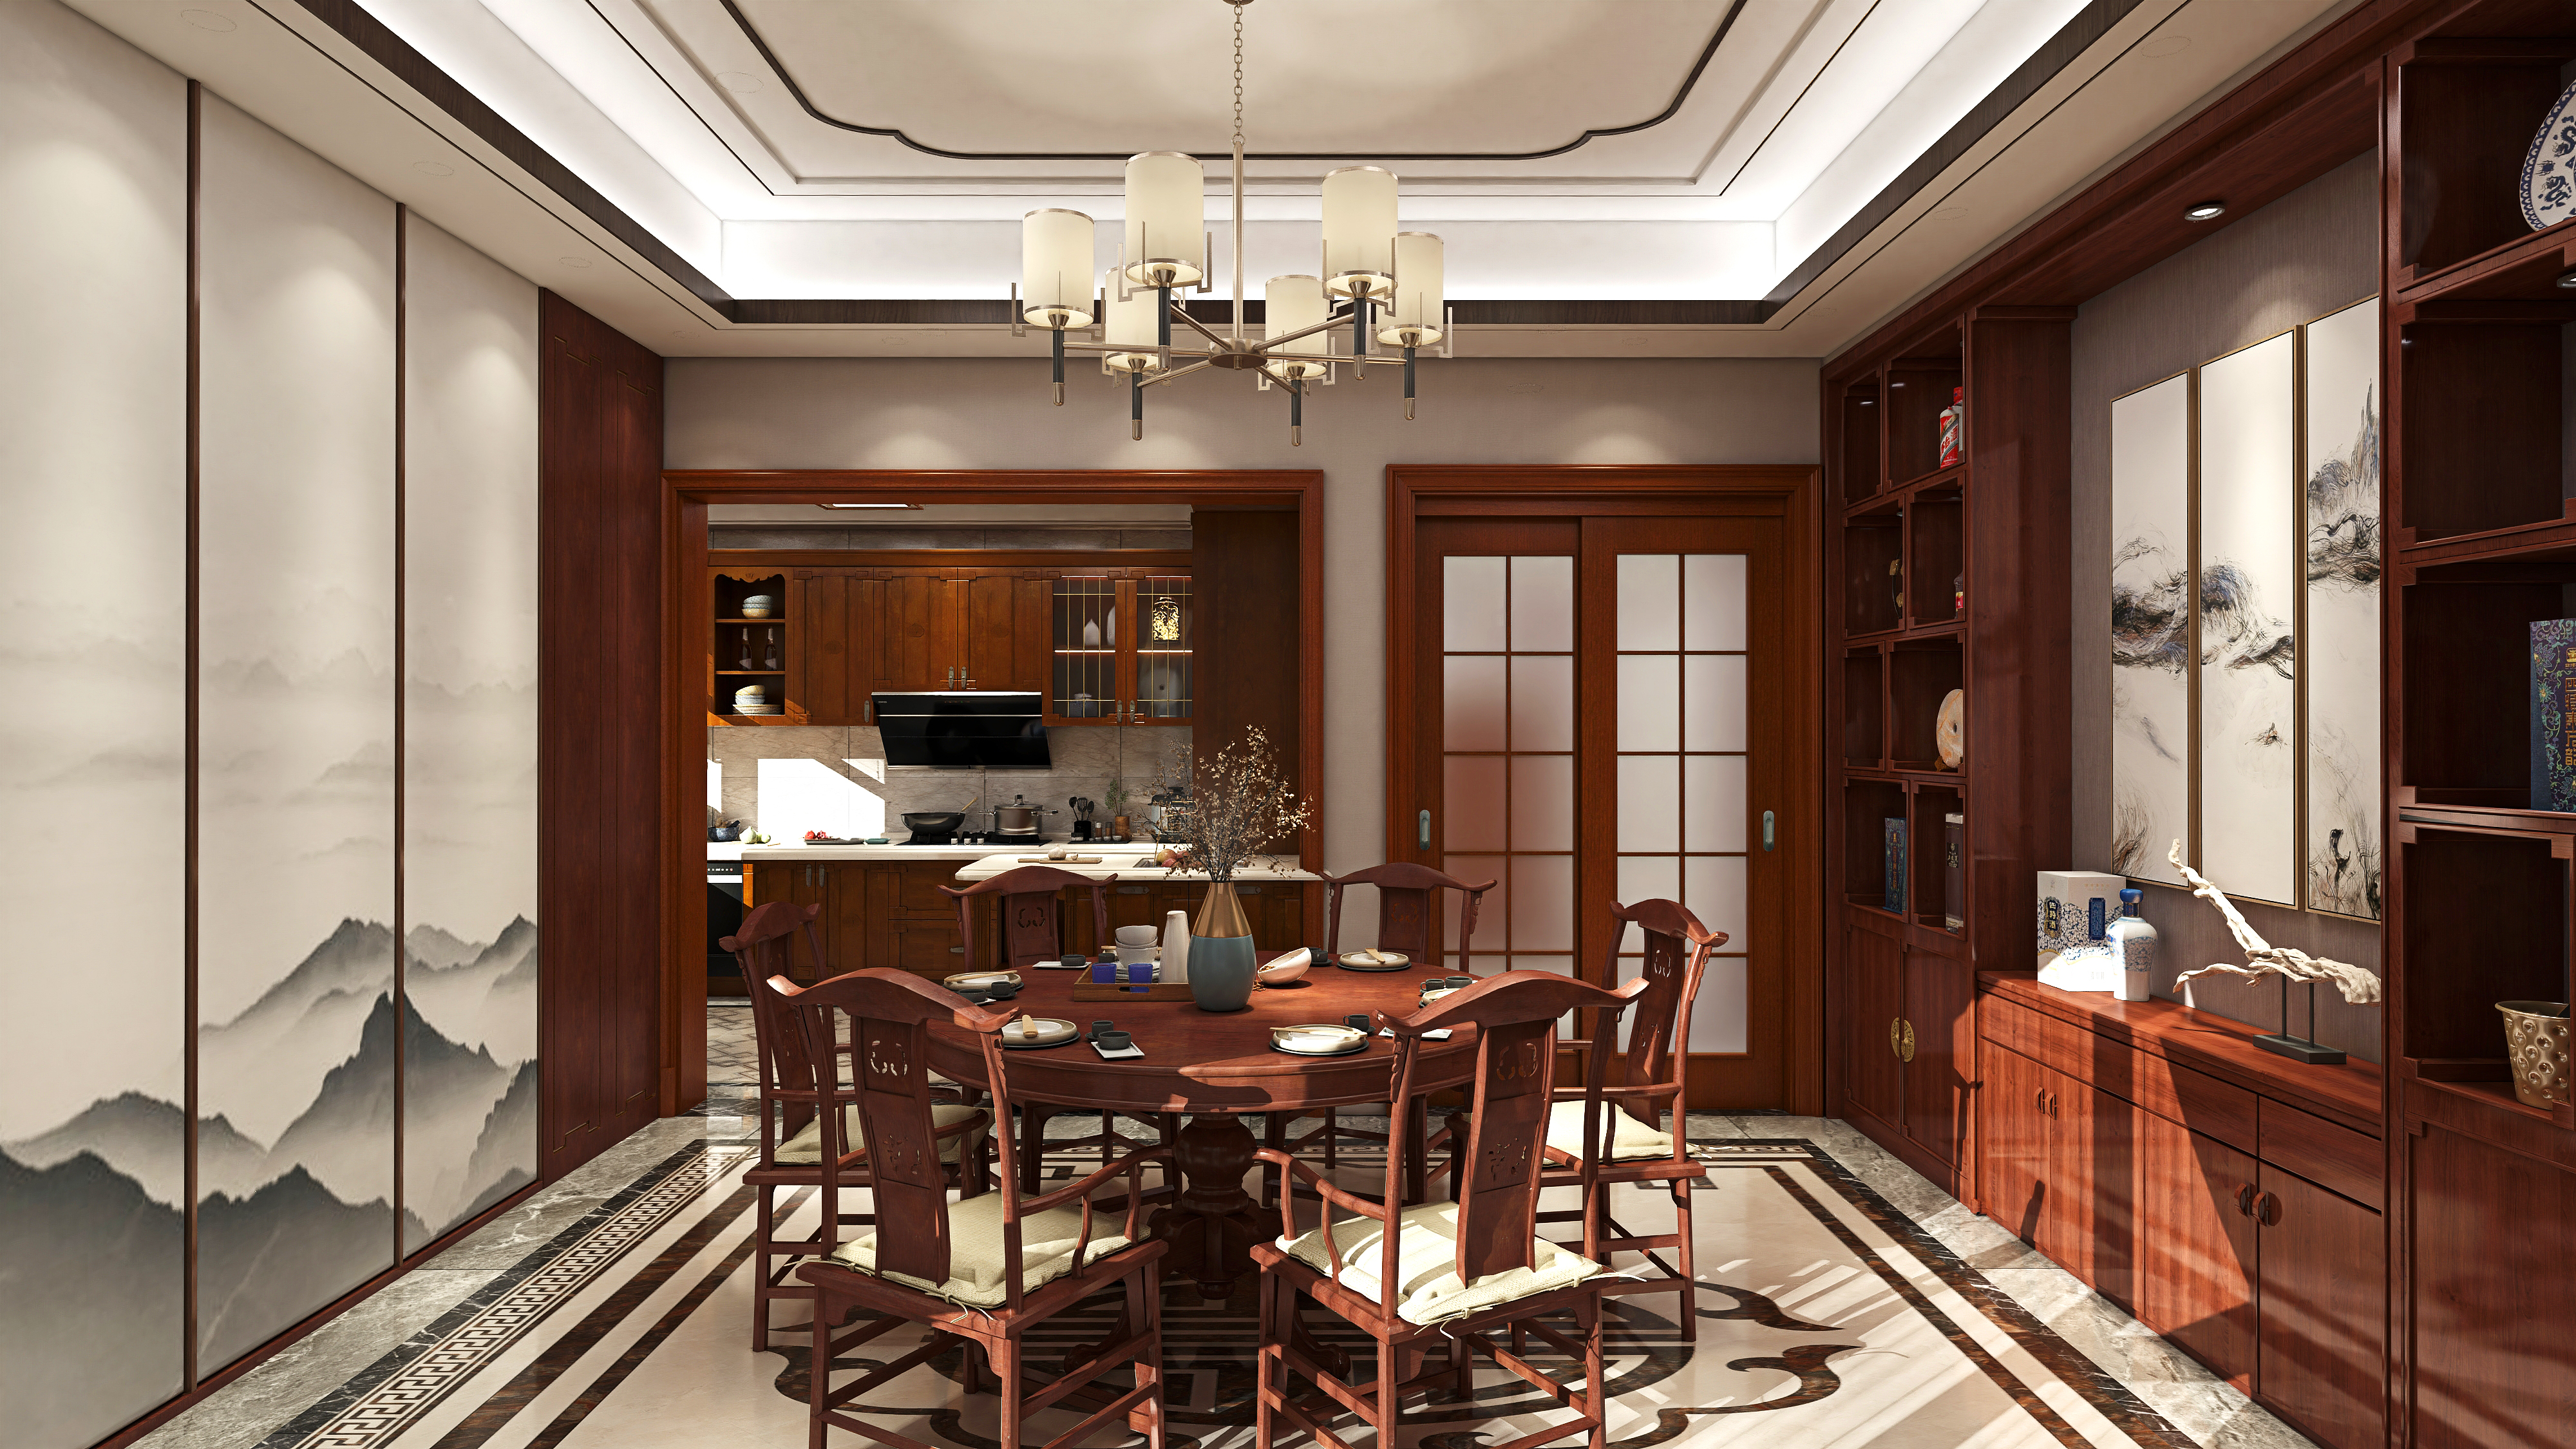 传统新中式风格家具虽以木质材料居多,颜色多以仿花梨木和紫檀色为主